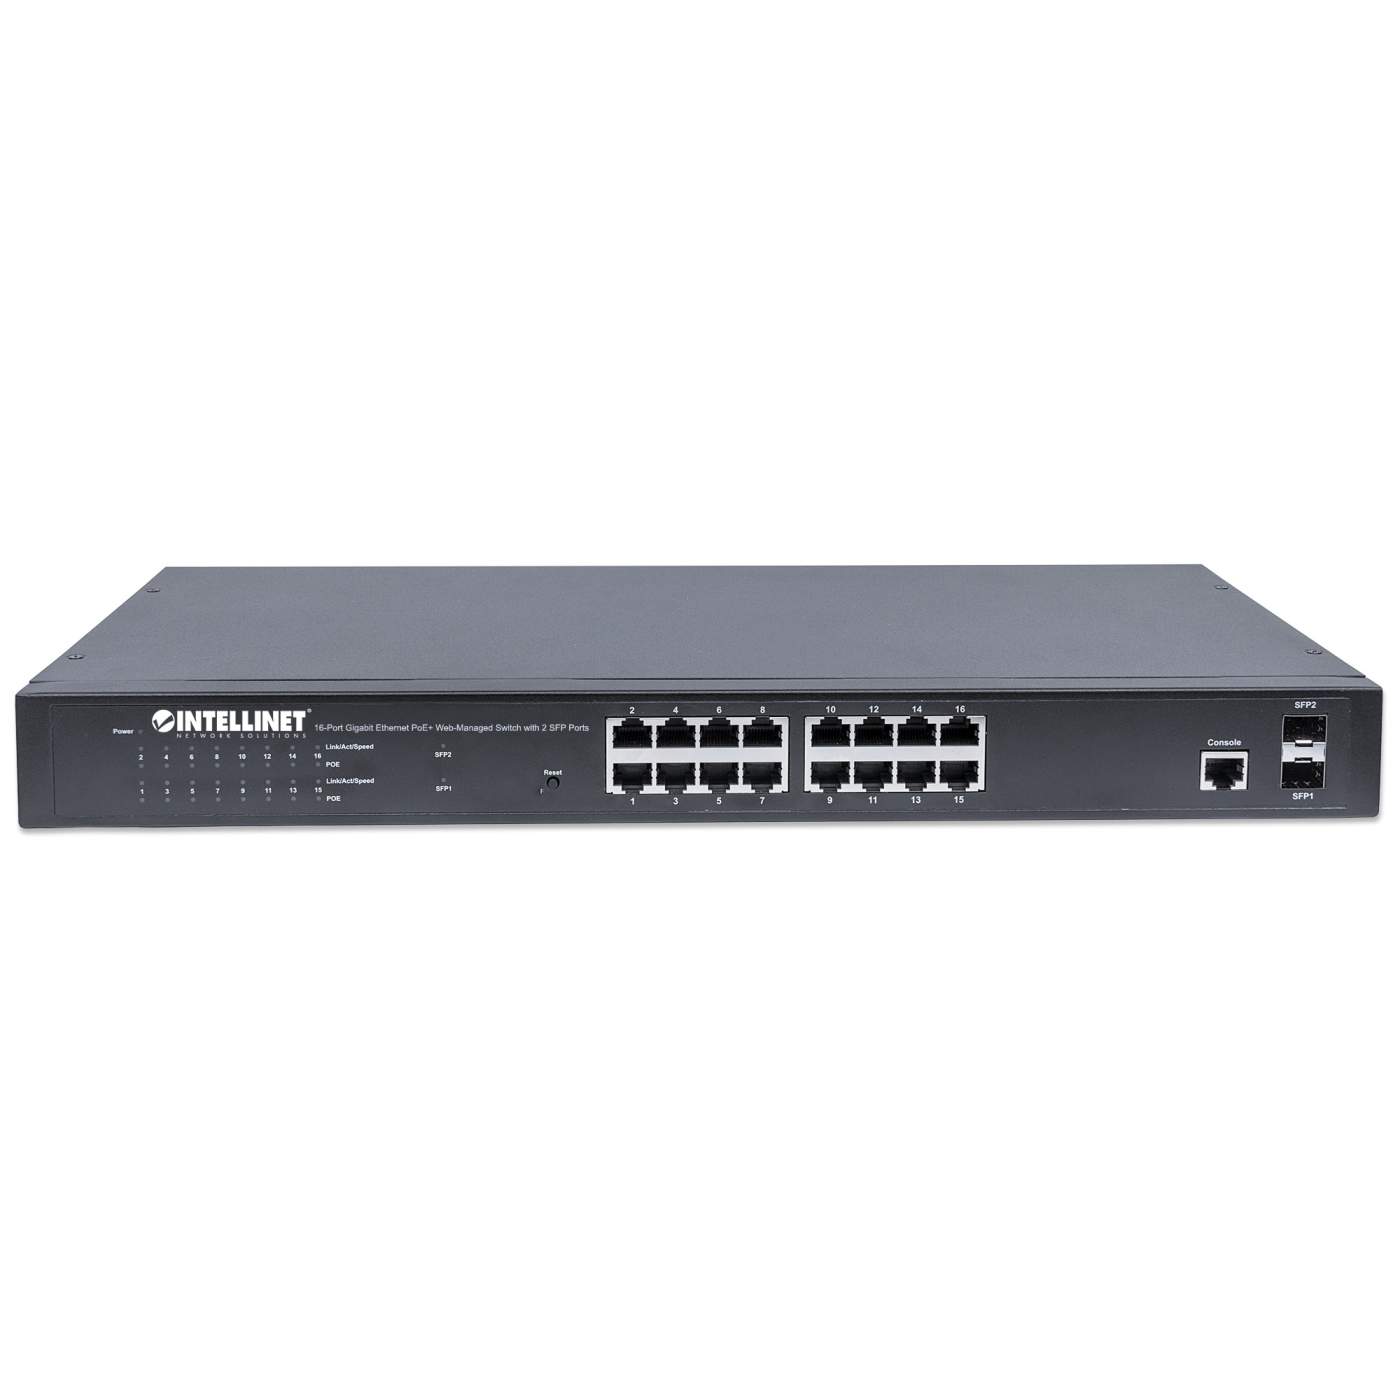 Switch Gigabit Ethernet 16 Porte PoE+ Web-Managed con 2 porte SFP -  INTELLINET - I-SWHUB POE-198